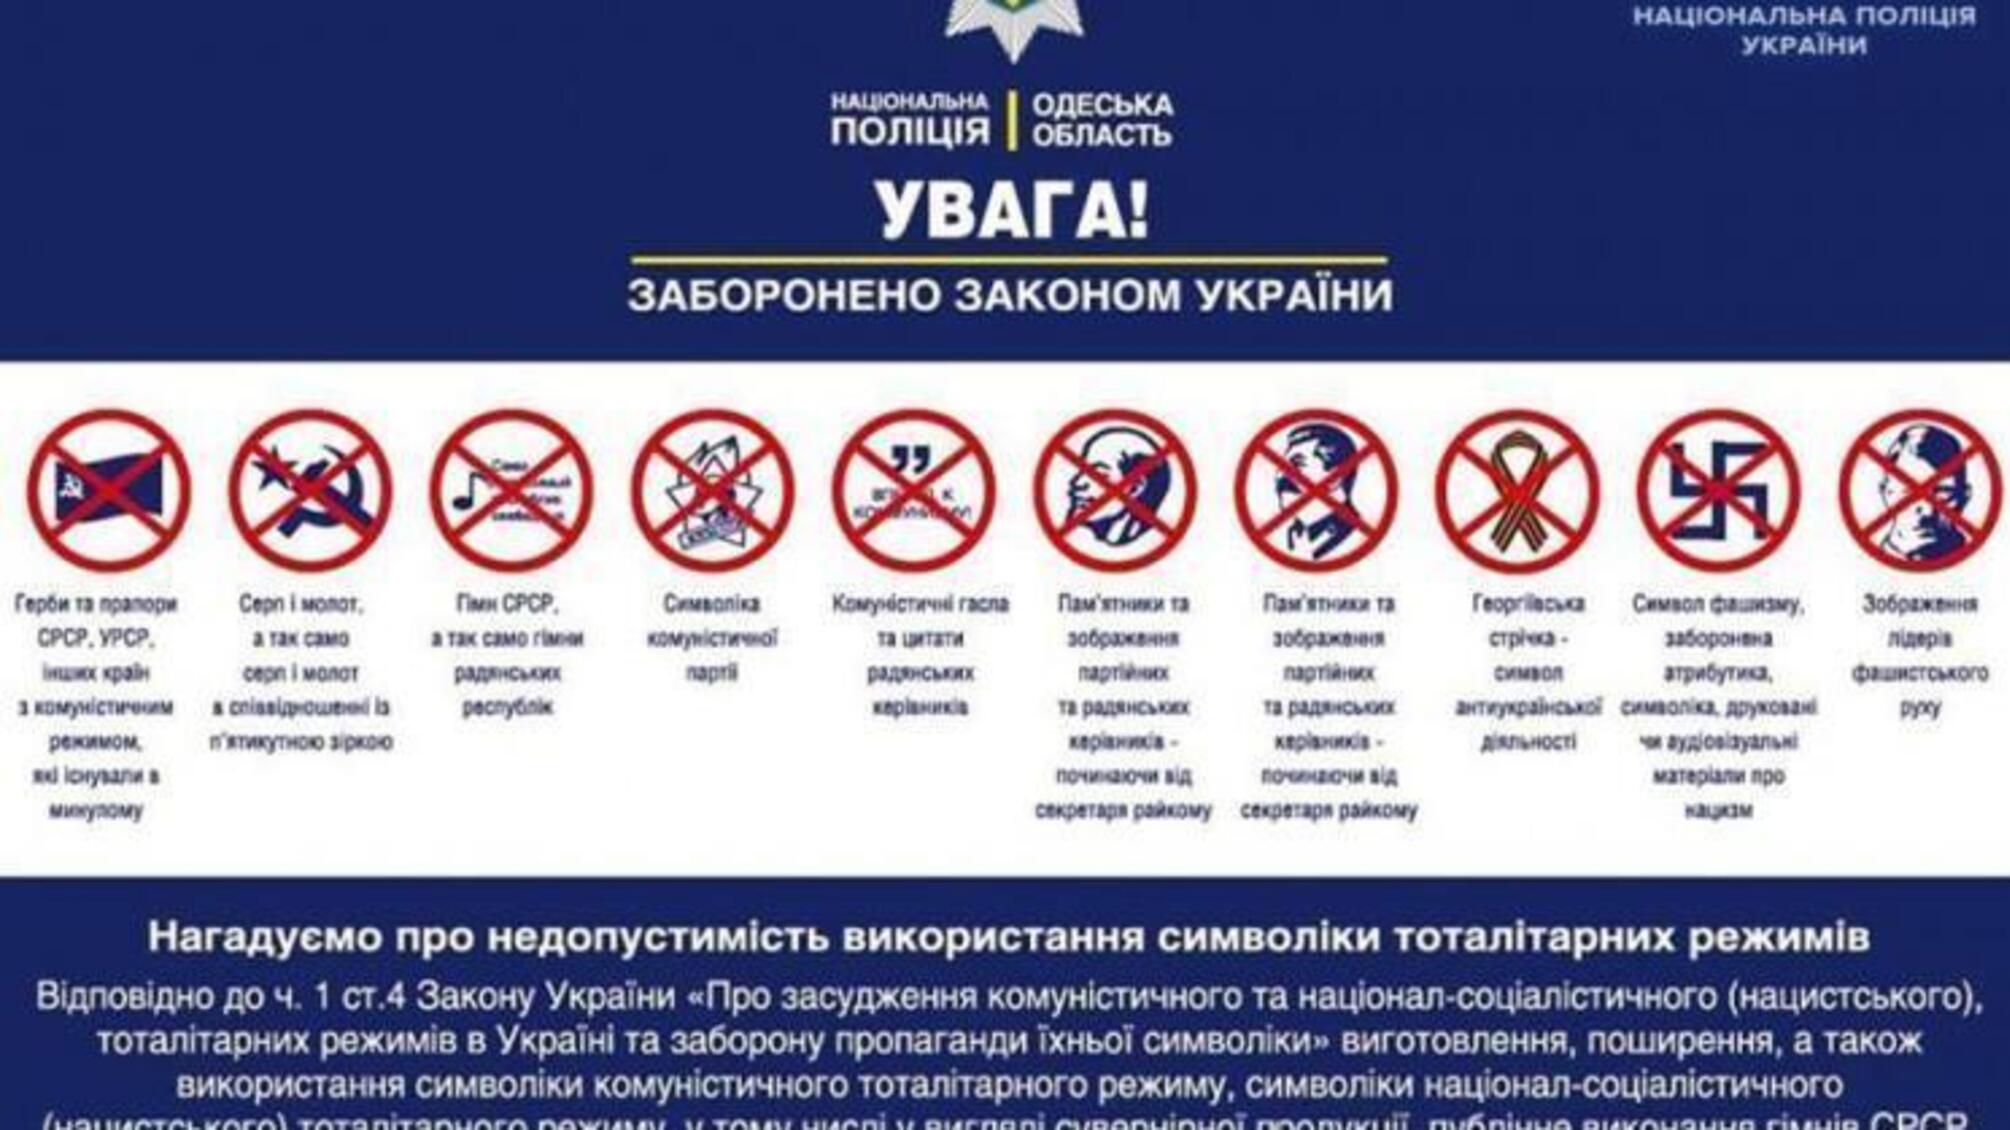 Напередодні 8 та 9 травня поліцейські нагадують про заборону використання символіки тоталітарних режимів